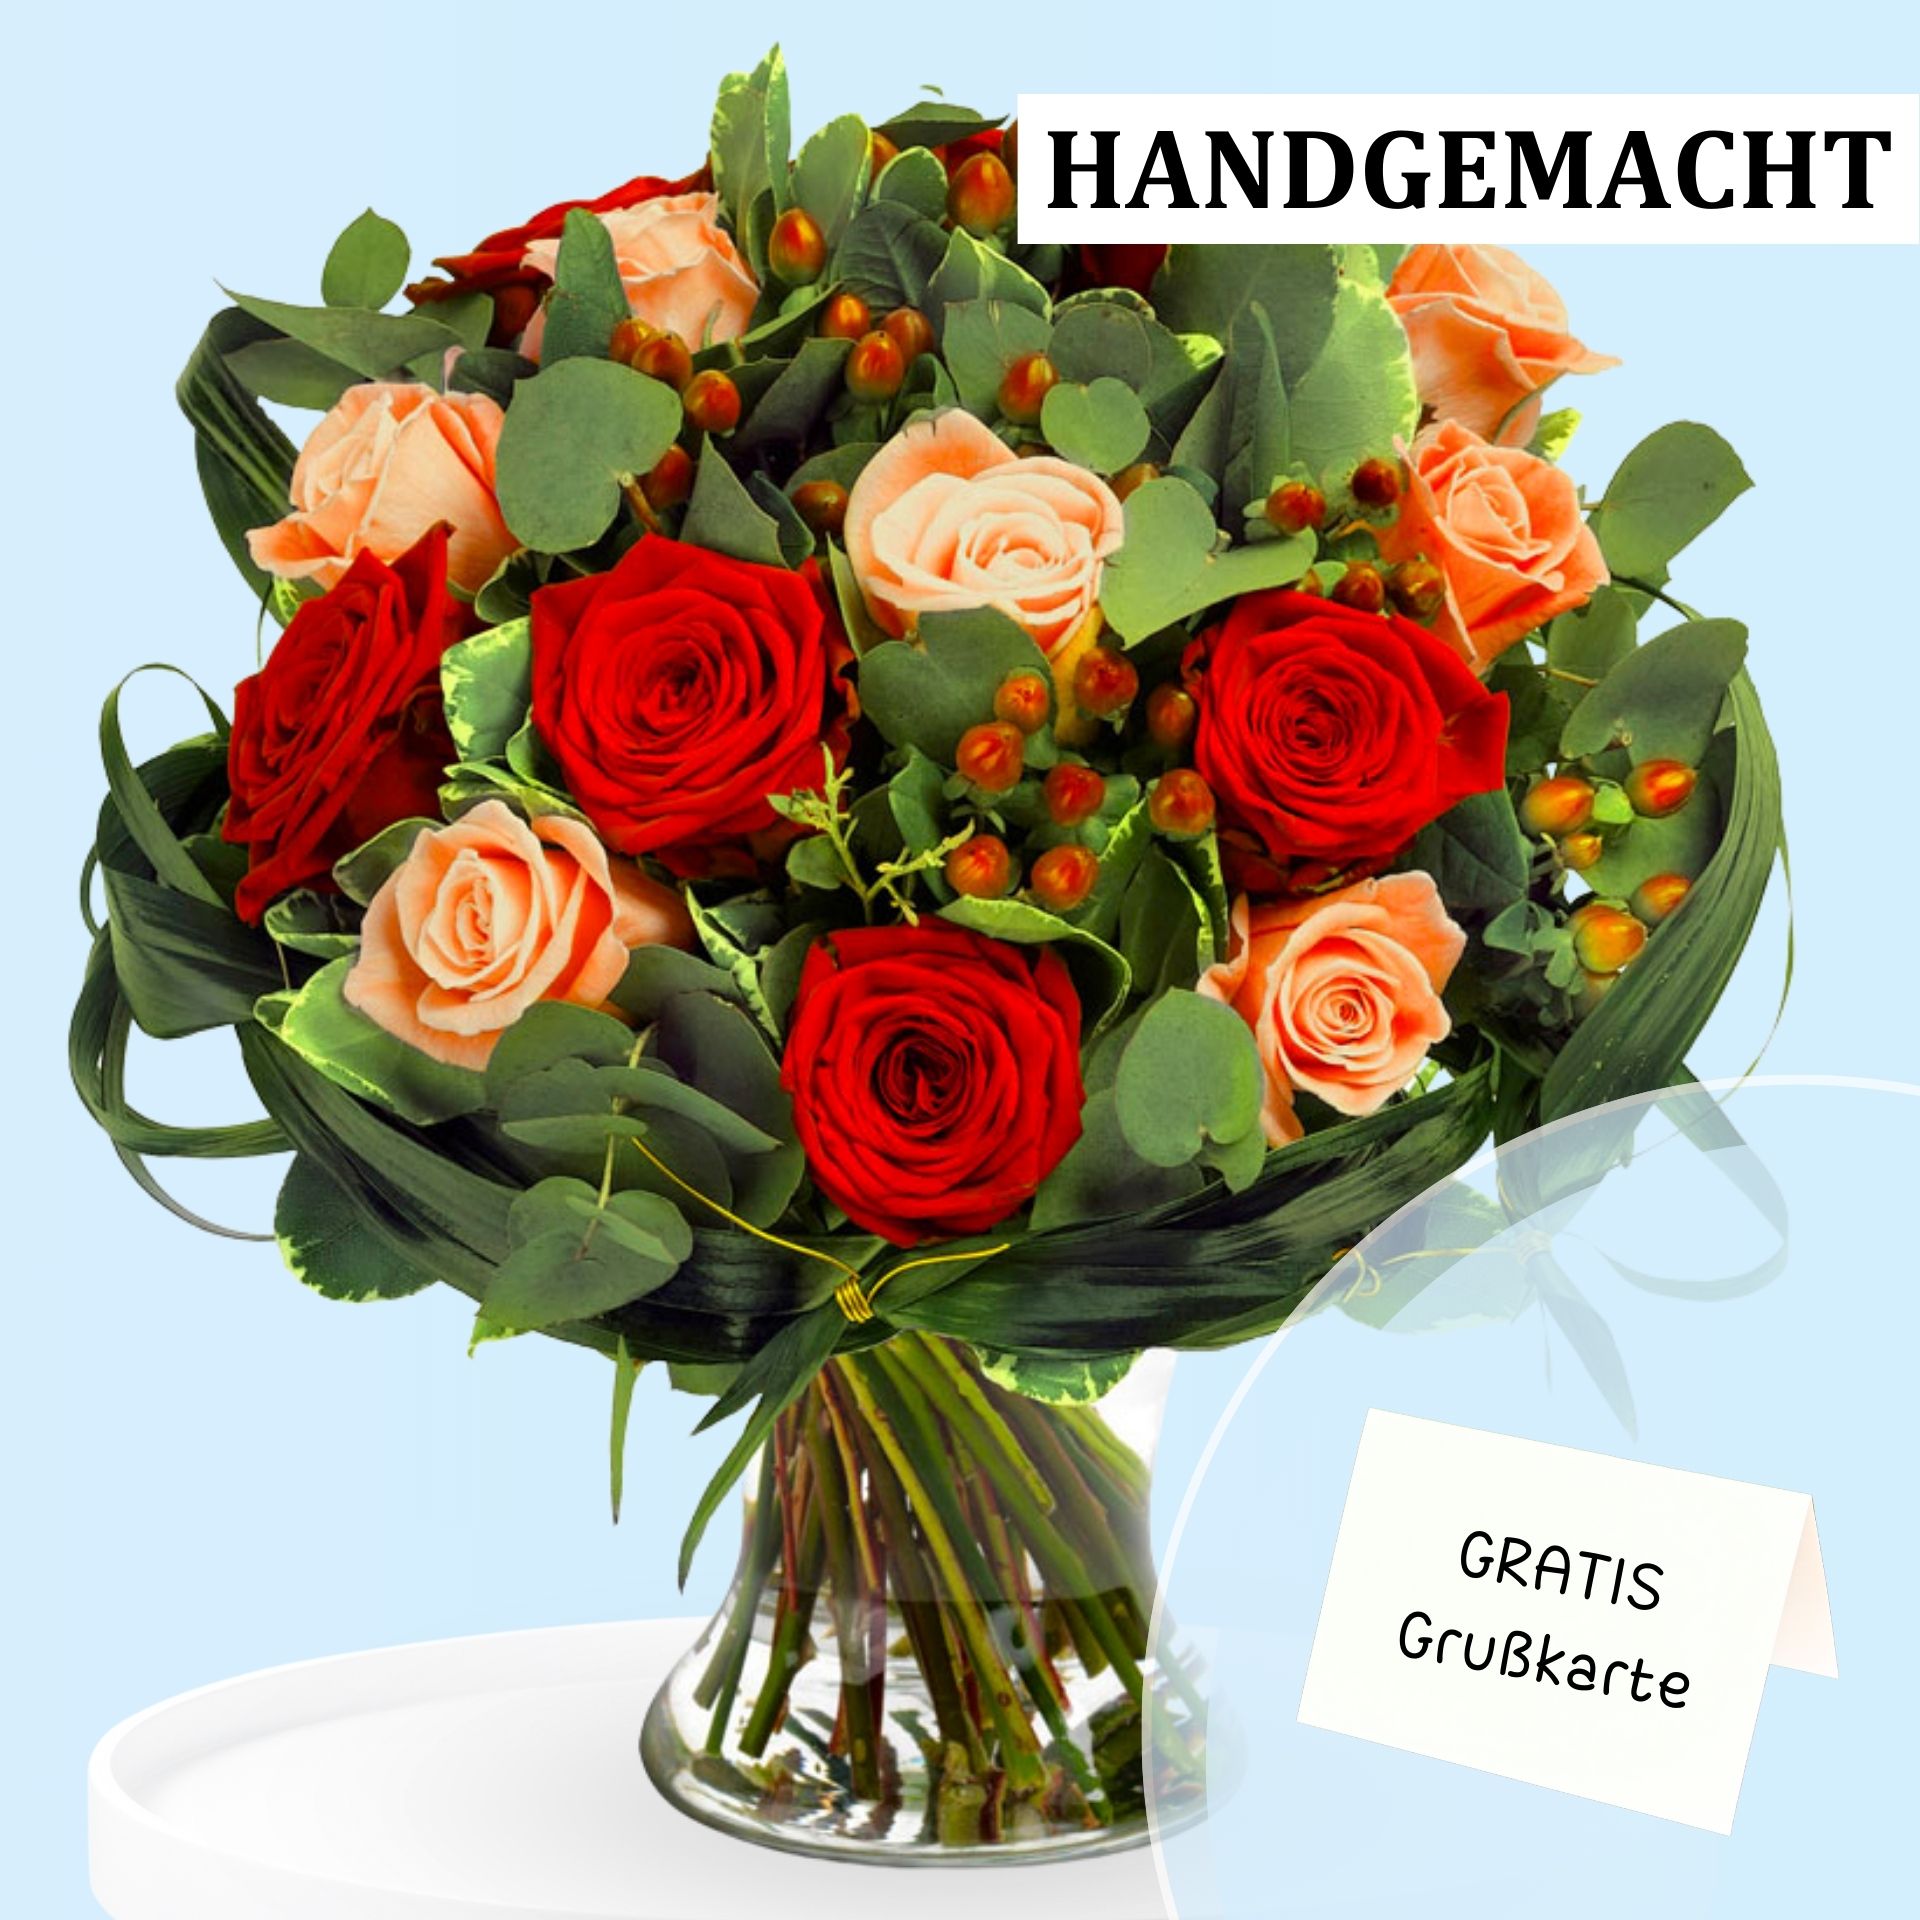 Handgemachter Blumenstrauß aus roten und cremefarbenen Rosen mit grünem Laub und dekorativen Beeren, inklusive kostenloser Grußkarte